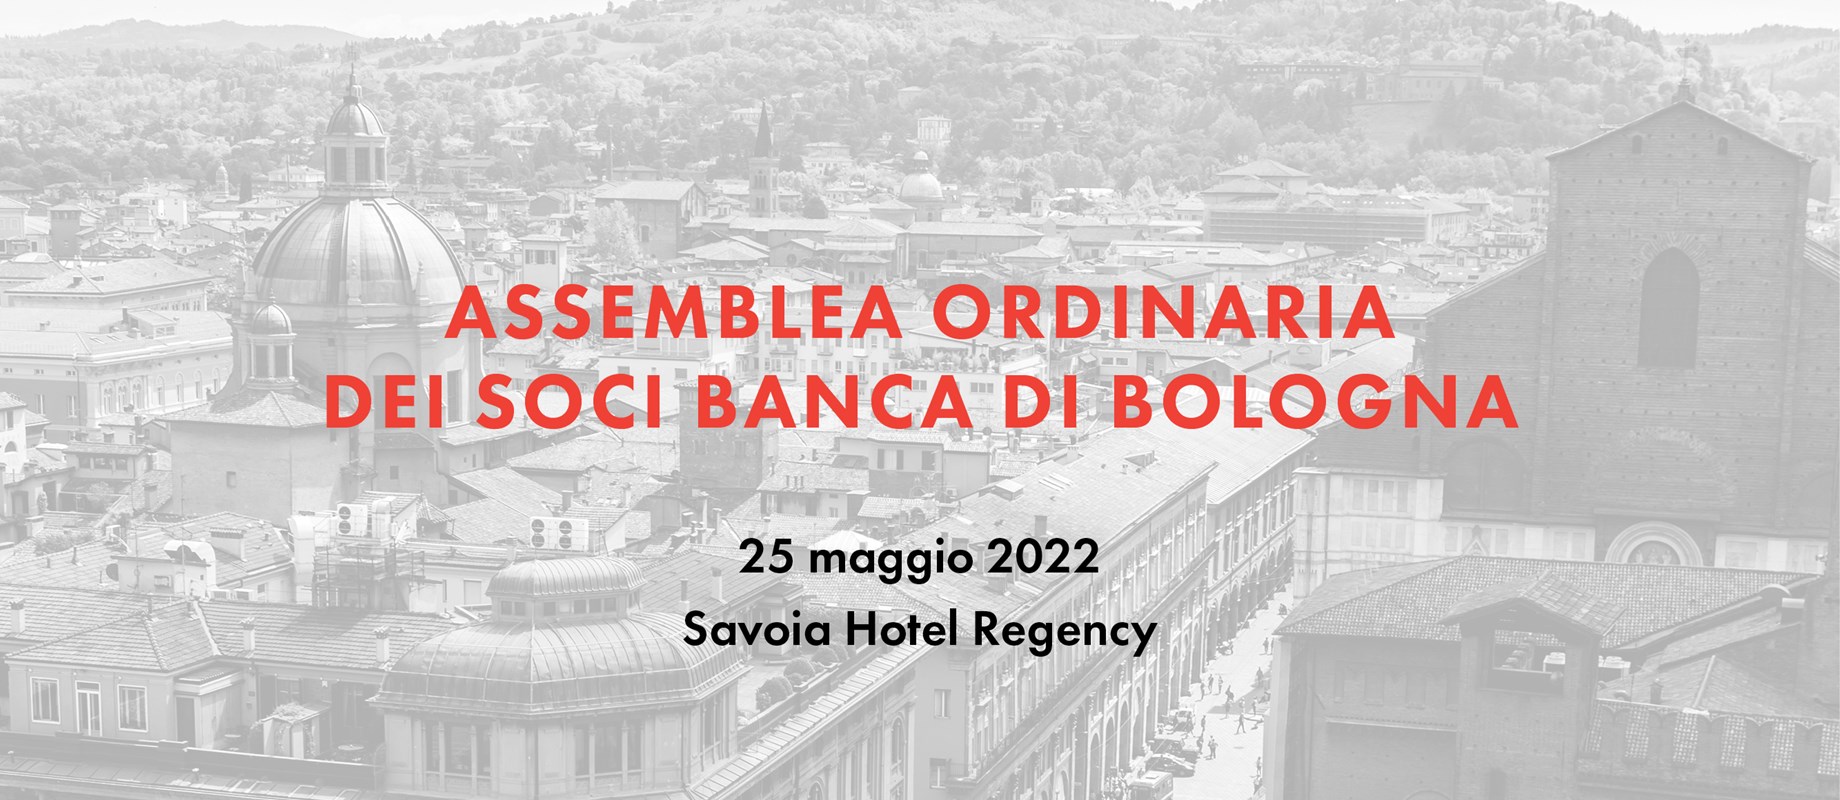 Assemblea Soci 2022 in presenza 25 maggio 2022 presso il Savoia Hotel Regency 